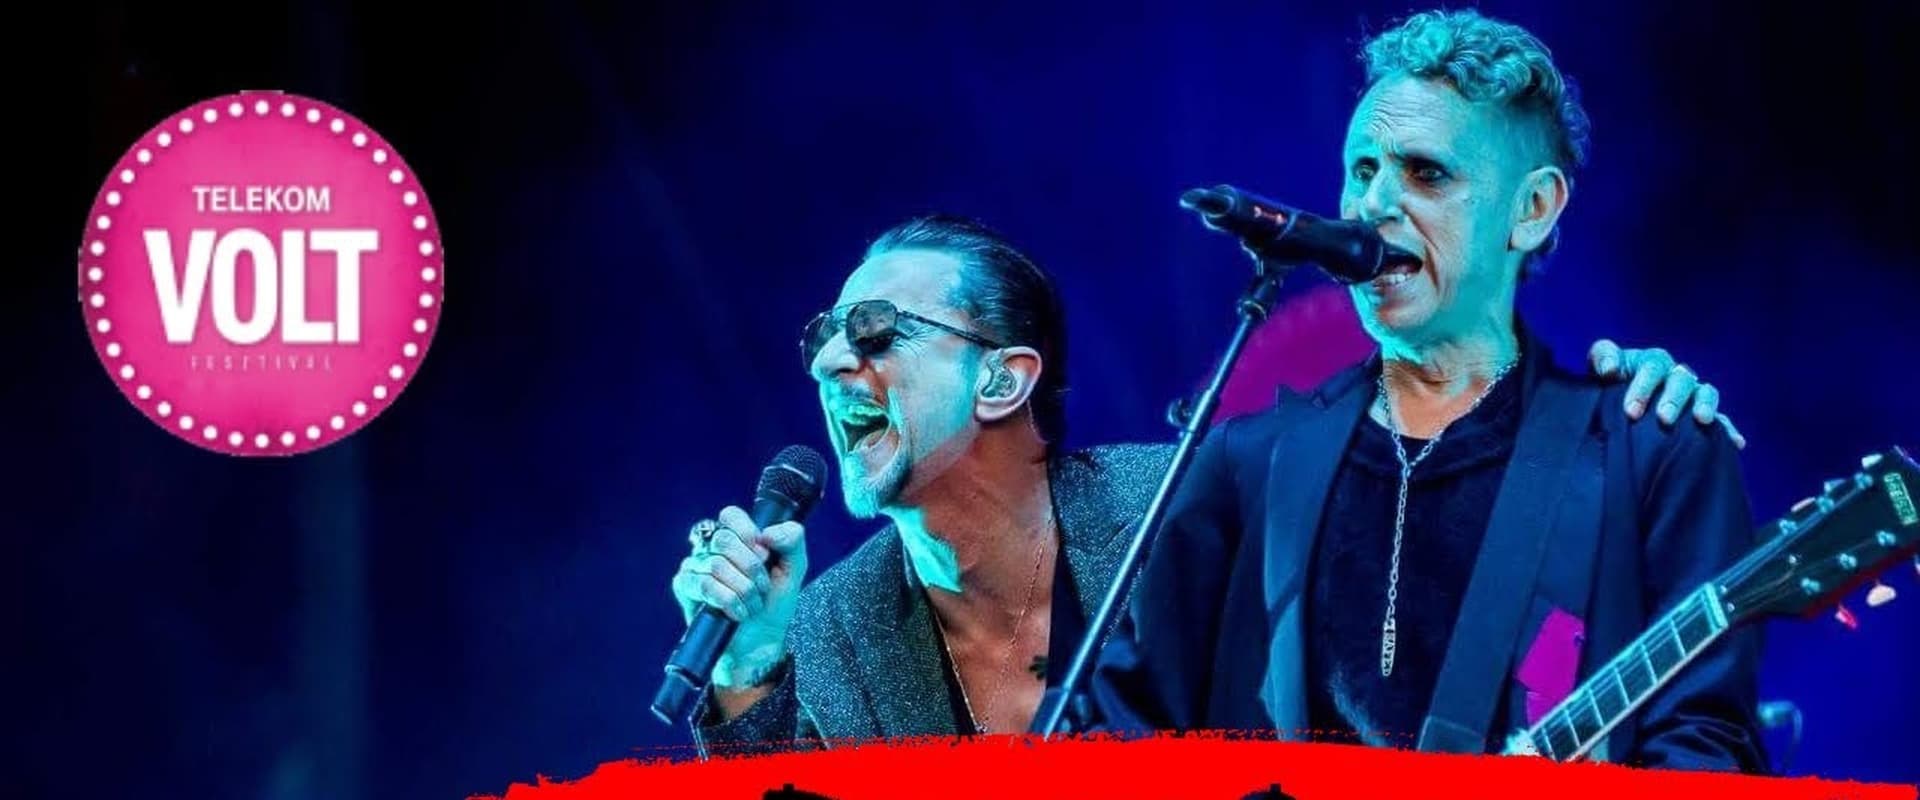 Depeche Mode VOLT Festival, Sopron, Hungary 2018